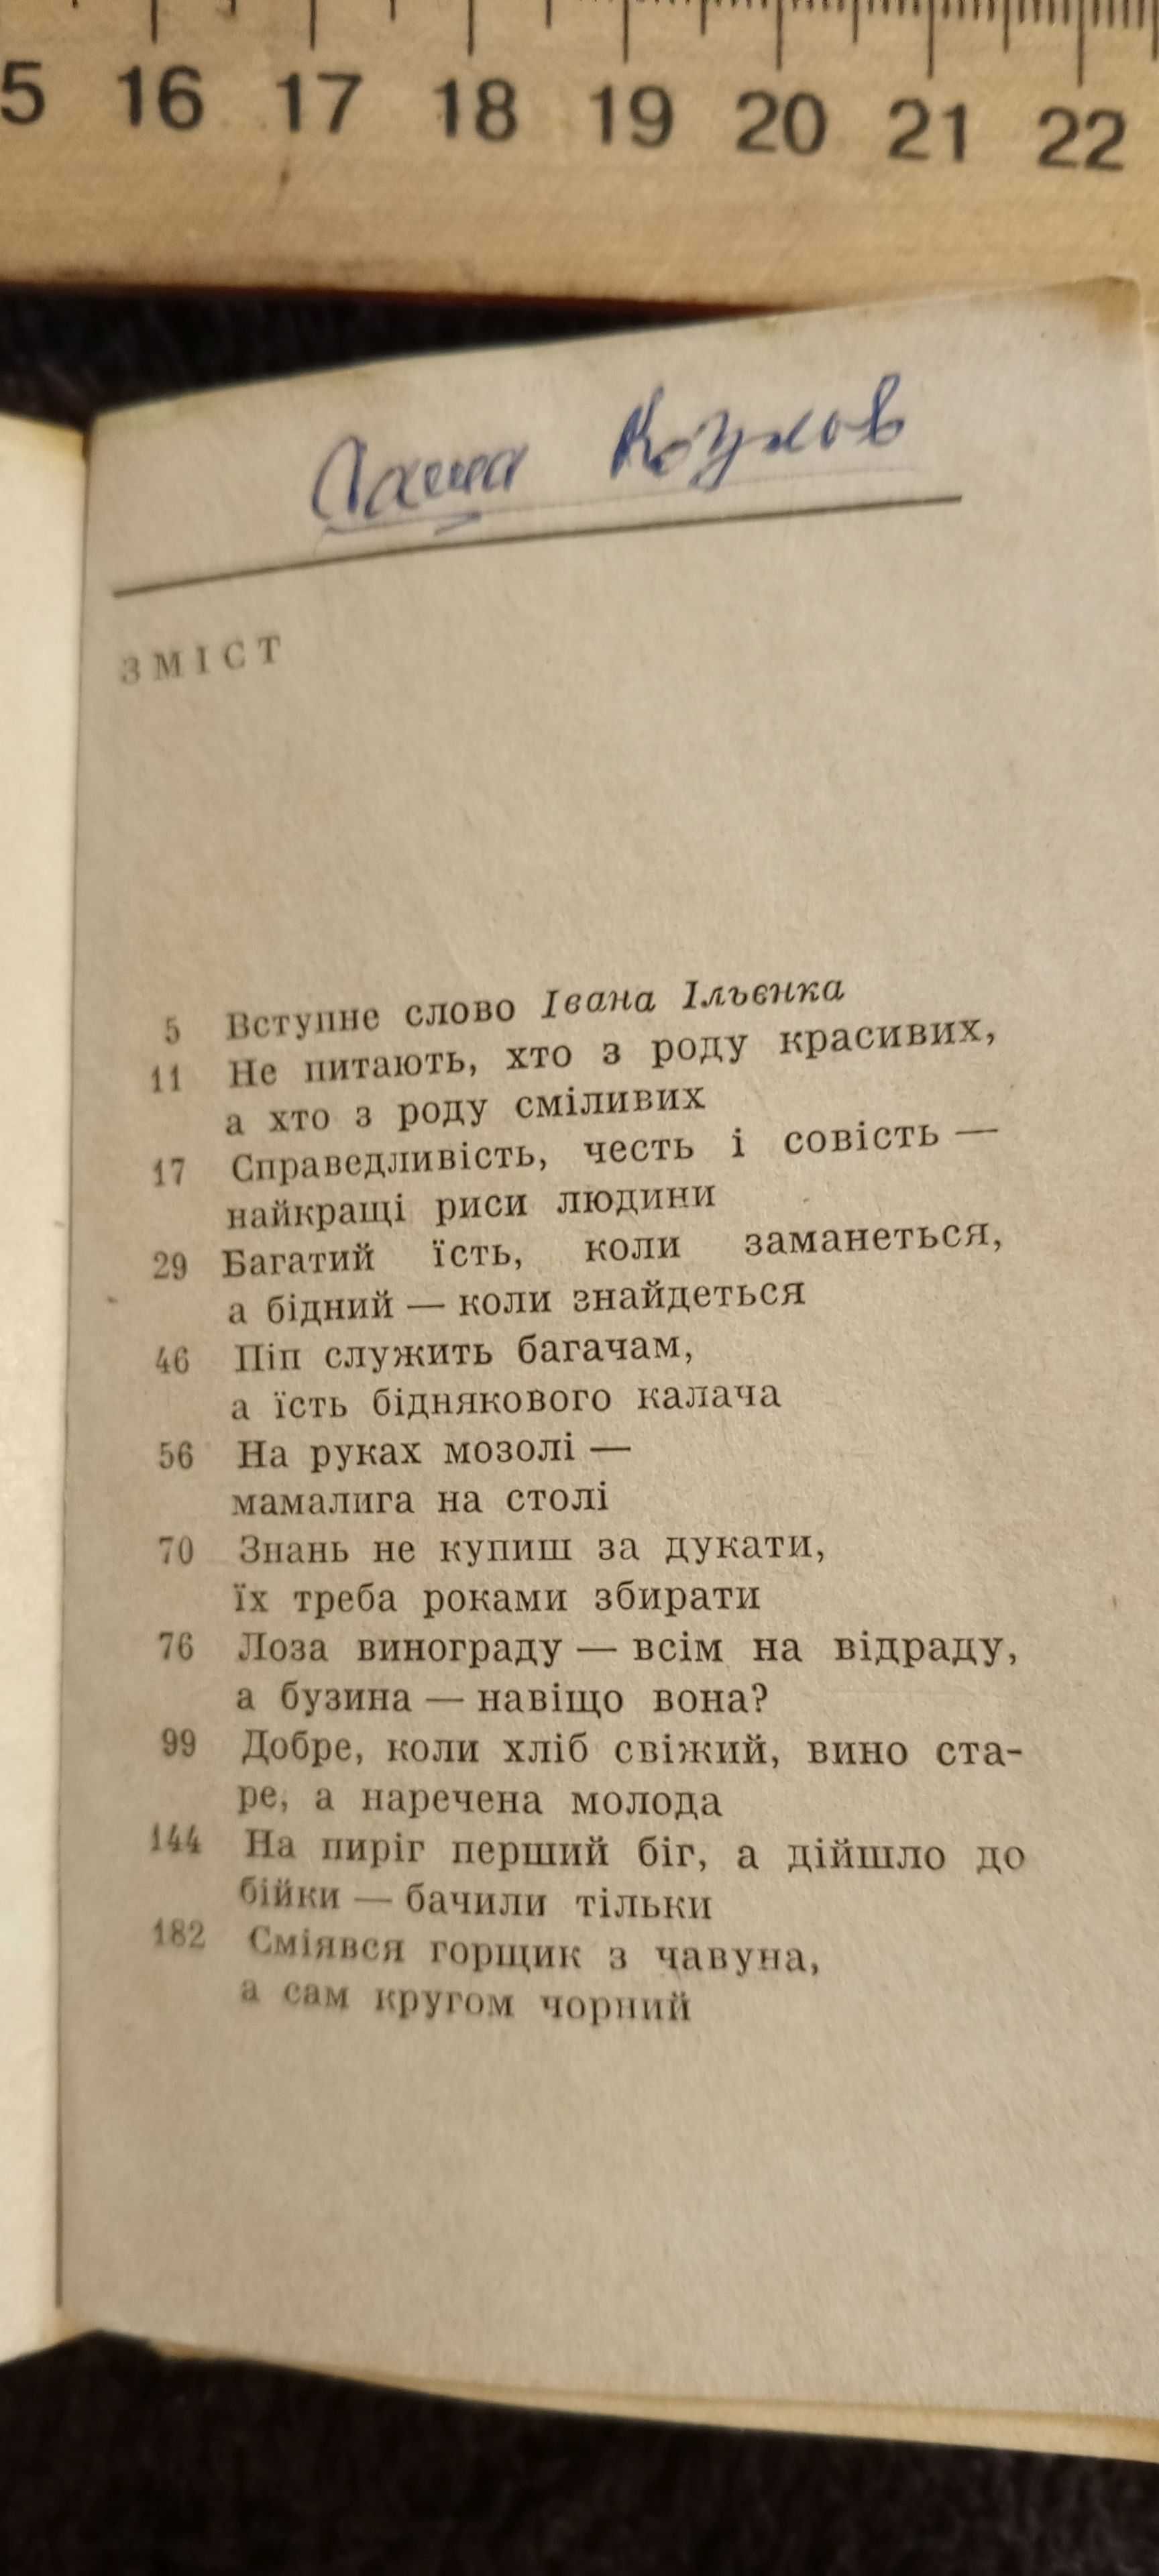 Книга молдавские пословици и поговорки 1969 г.  укр.